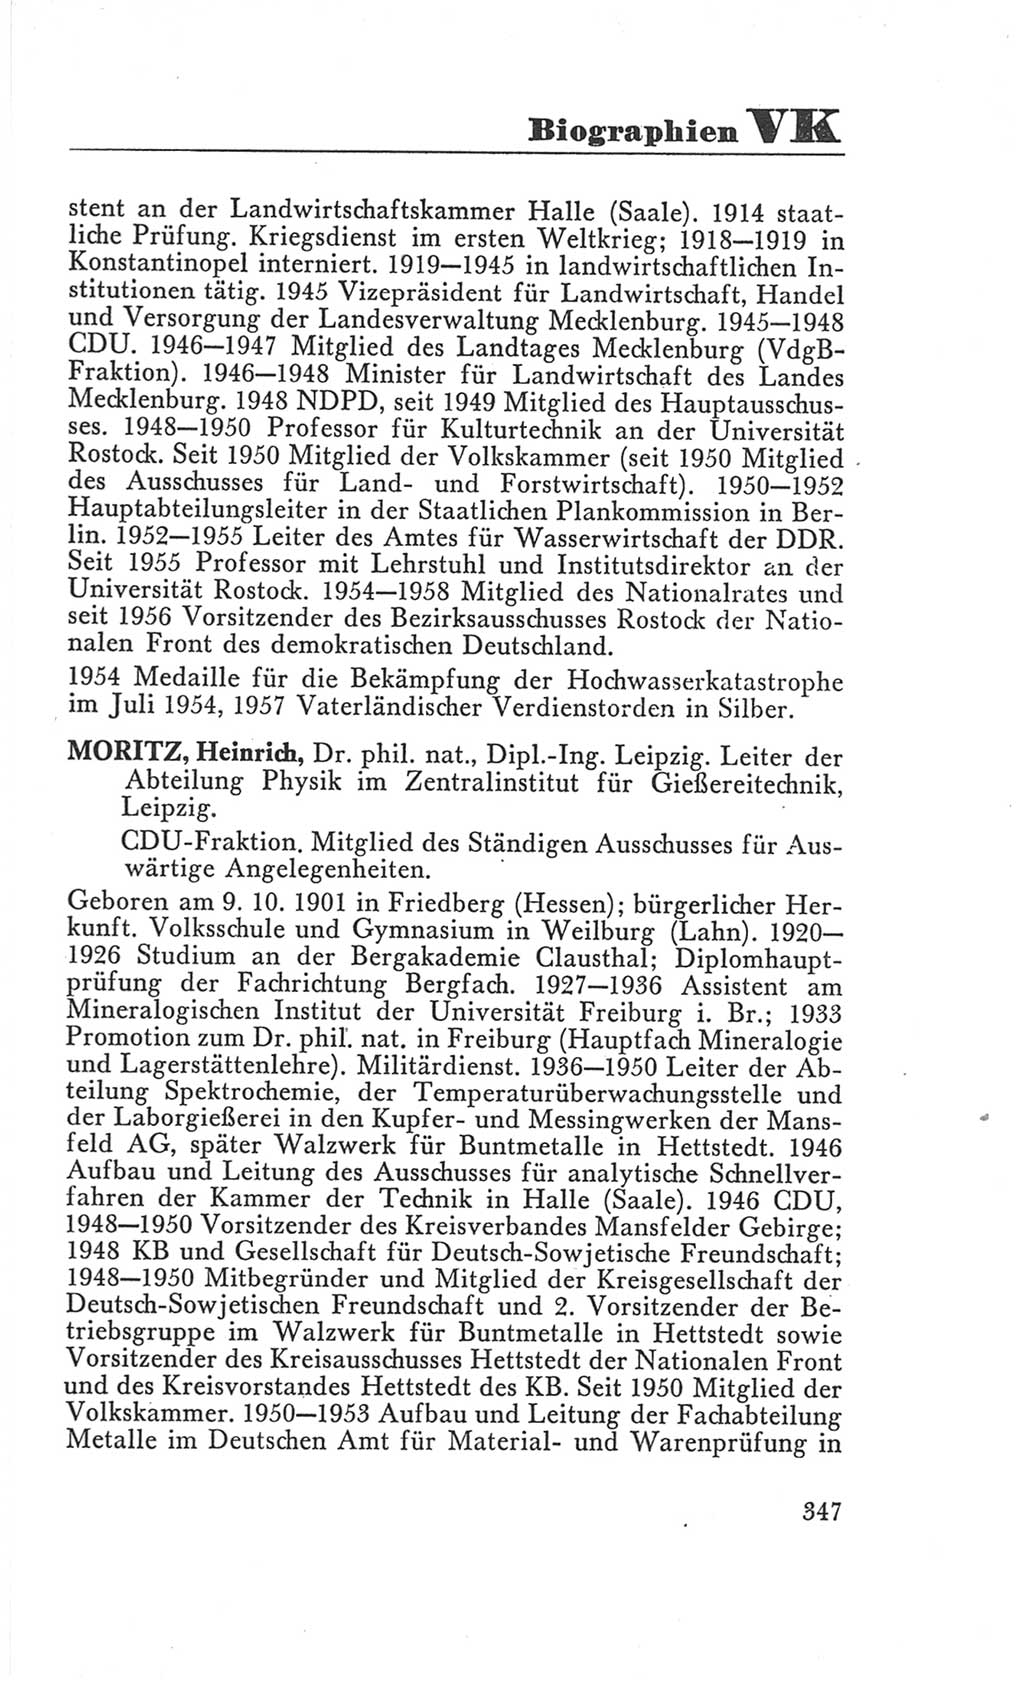 Handbuch der Volkskammer (VK) der Deutschen Demokratischen Republik (DDR), 3. Wahlperiode 1958-1963, Seite 347 (Hdb. VK. DDR 3. WP. 1958-1963, S. 347)